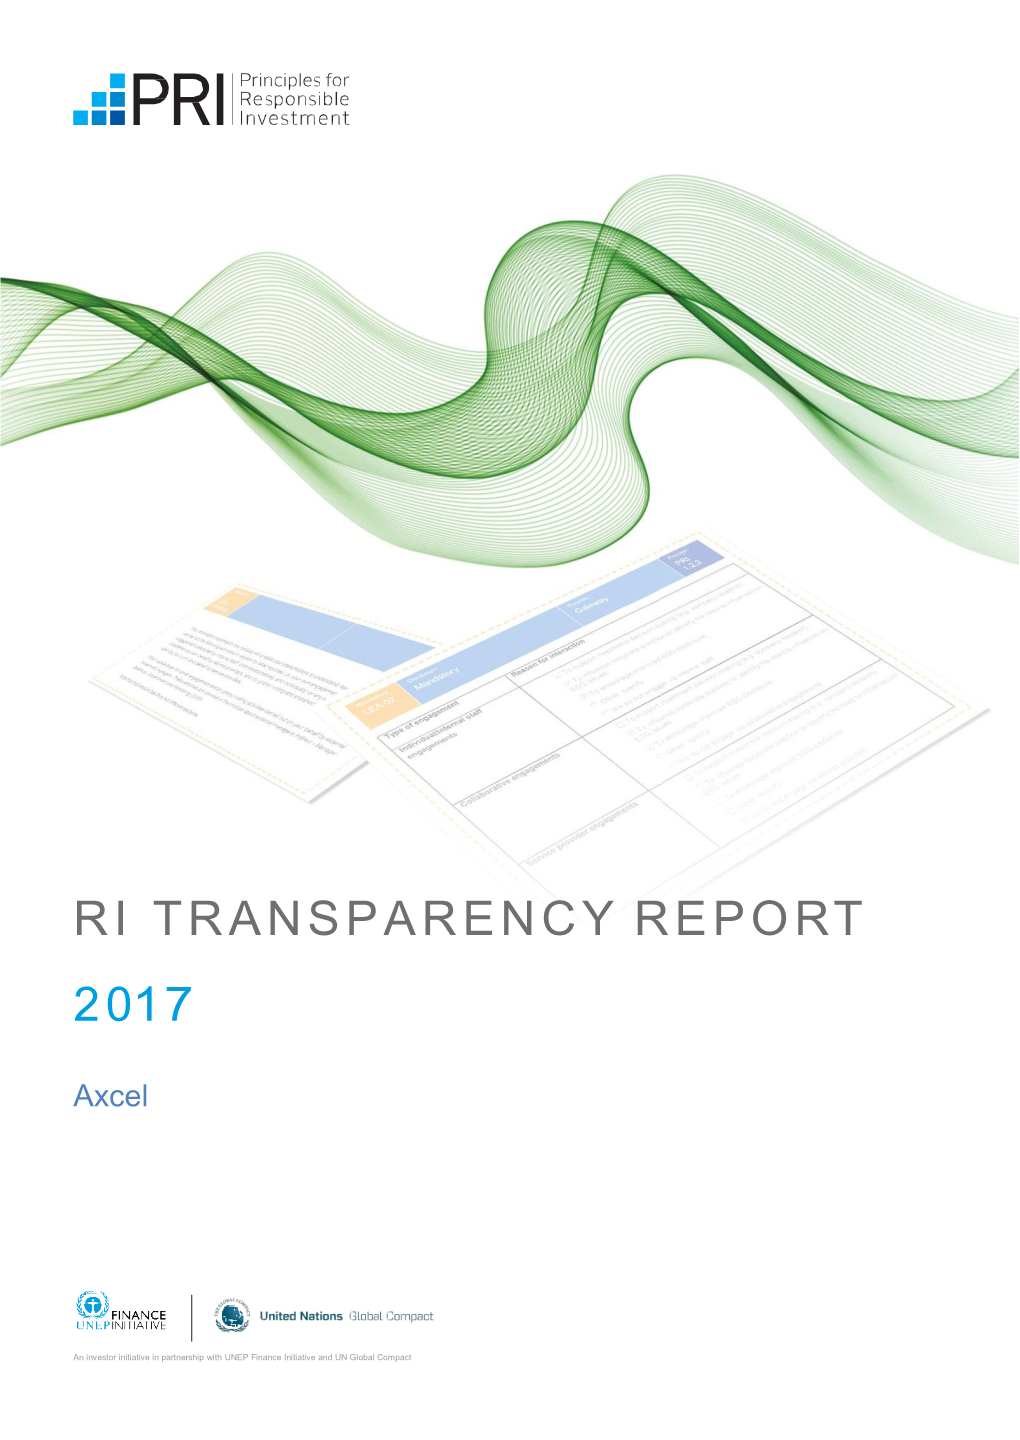 Transparency Report 2013-14 V02.Indd